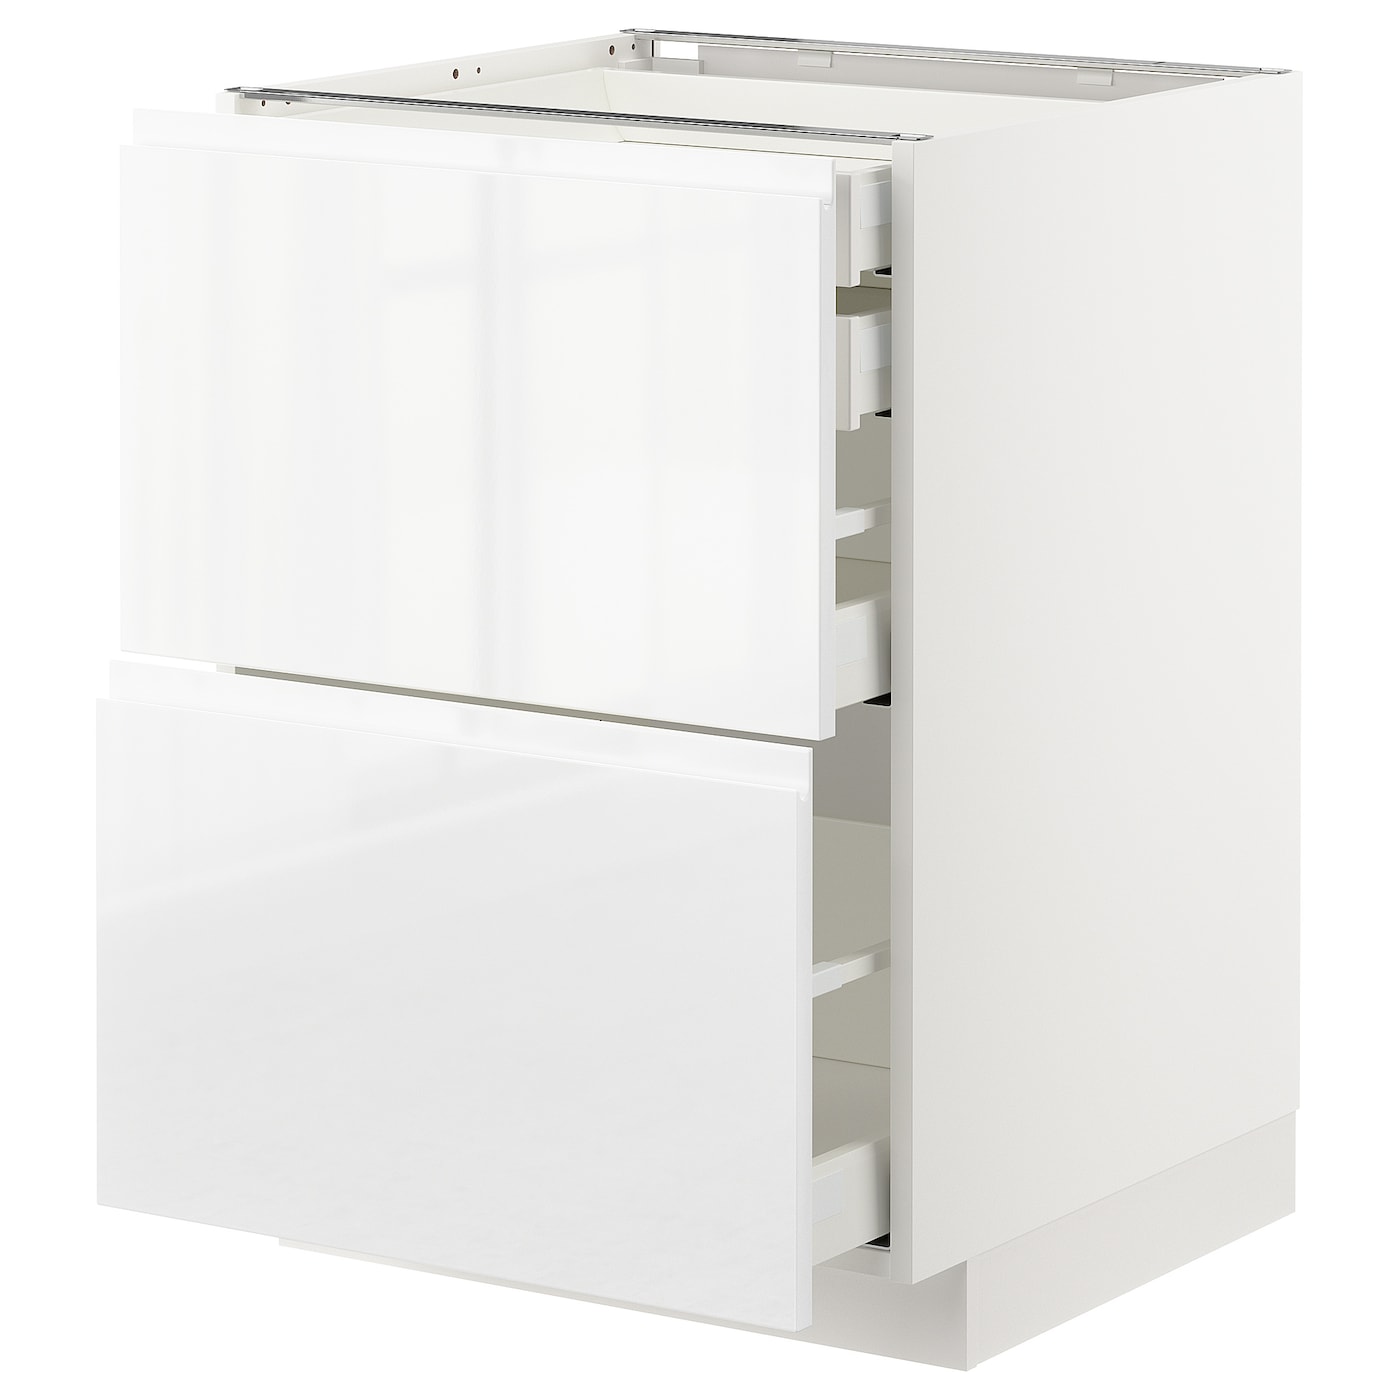 Напольный шкаф  - IKEA METOD MAXIMERA, 88x62,1x60см, белый, МЕТОД МАКСИМЕРА ИКЕА